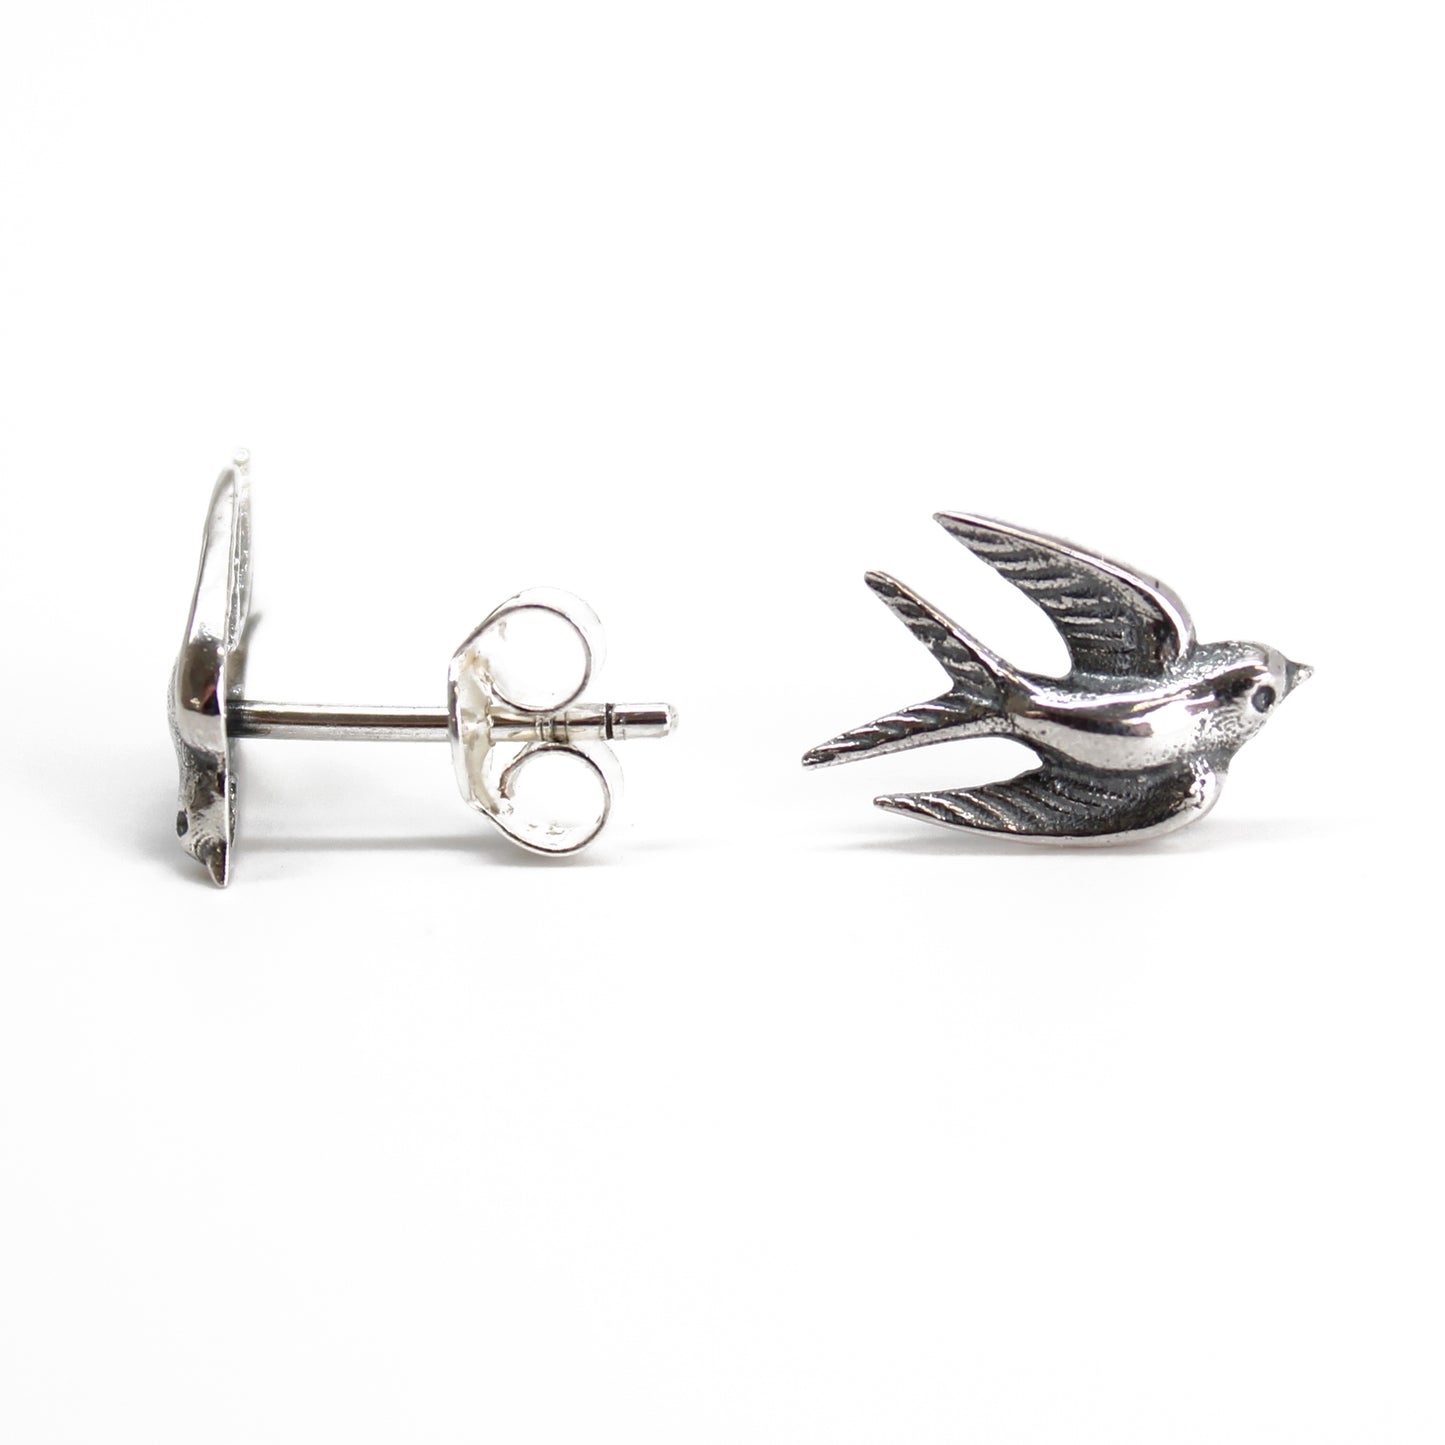 Sterling Silver Swallow Stud Earrings